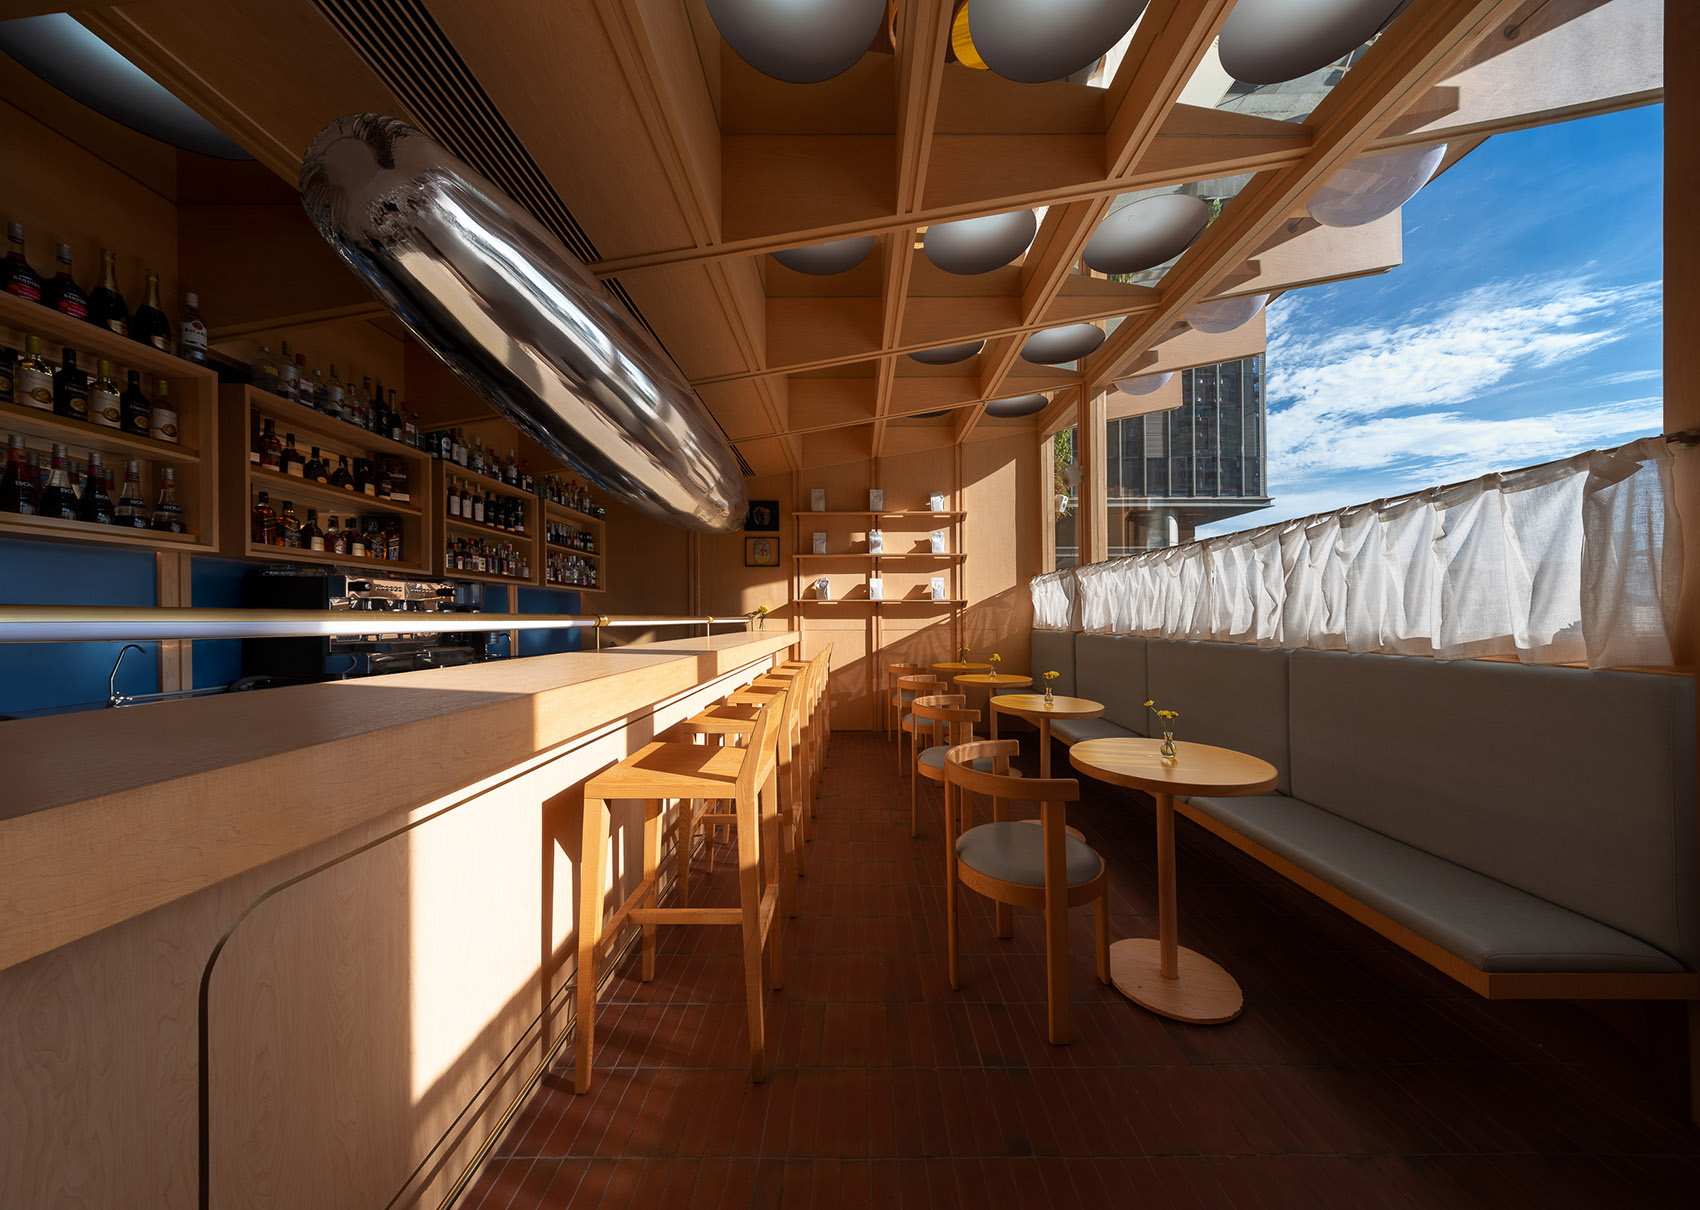 浮廊C2 Cafe &  Bar咖啡厅，深圳/专门为年轻人打造的“空中楼阁”-62